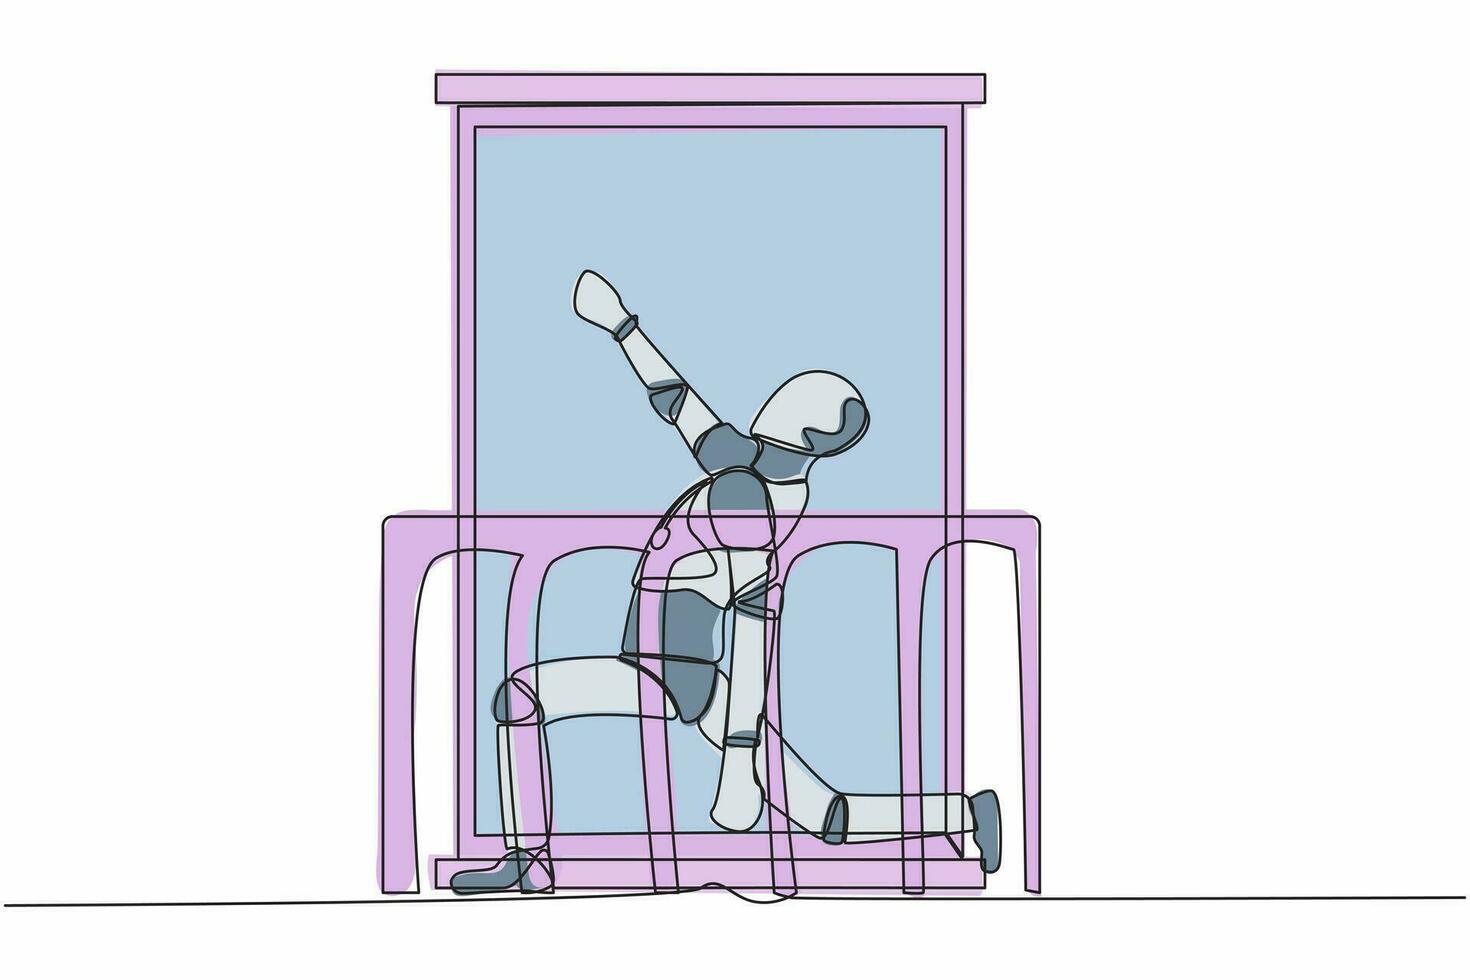 kontinuerlig ett linje teckning robot med hörlurar praxis yoga nära fönster eller balkong. sporter, träna, övning aktivitet. humanoid robot cybernetiska organism. enda linje design vektor illustration